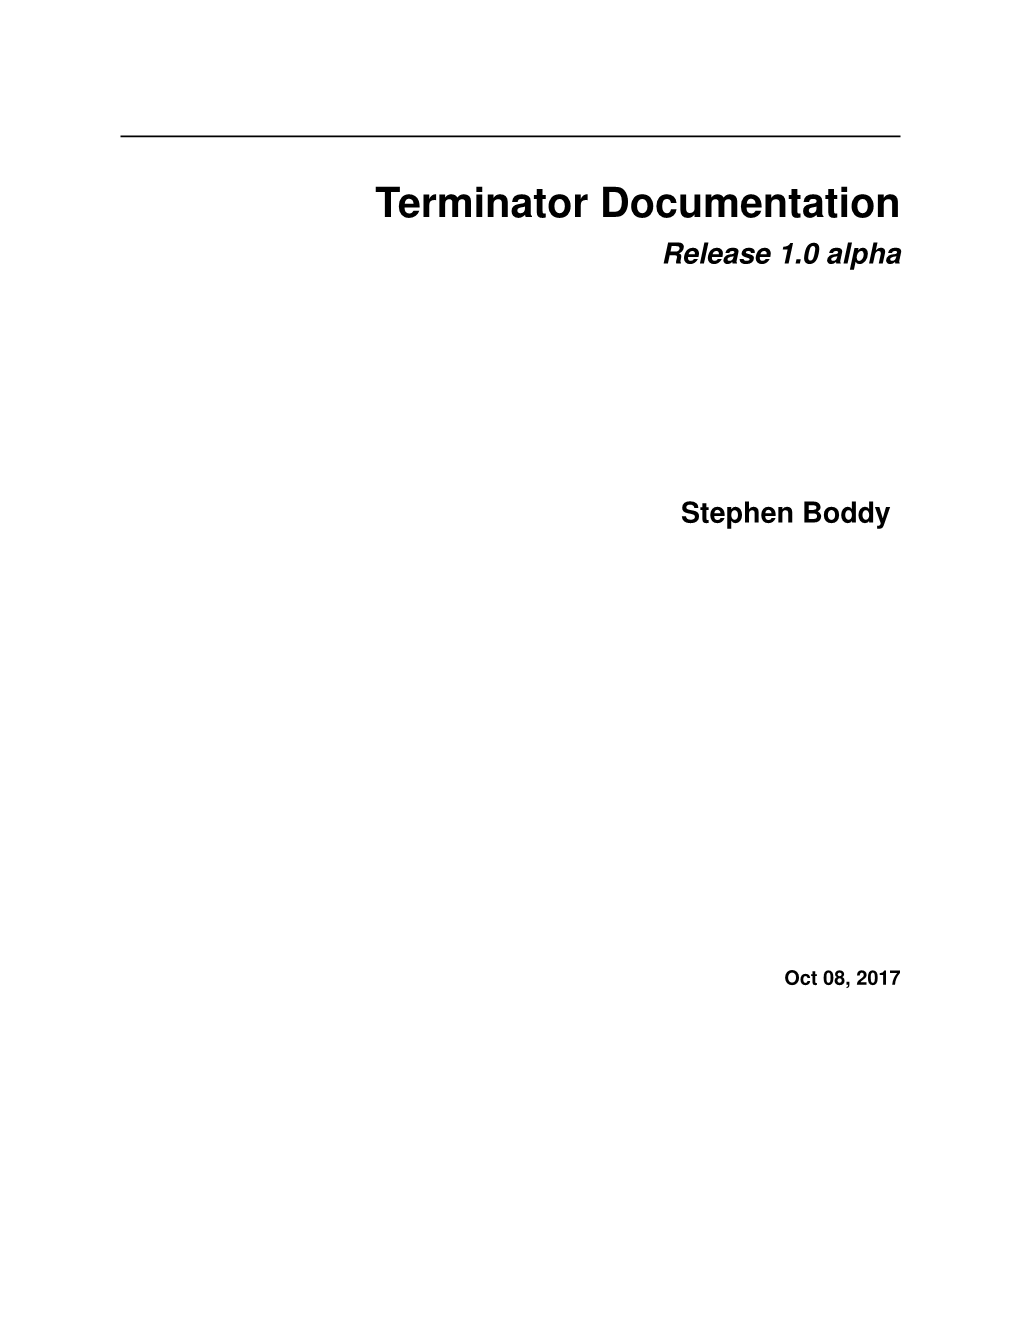 Terminator Documentation Release 1.0 Alpha